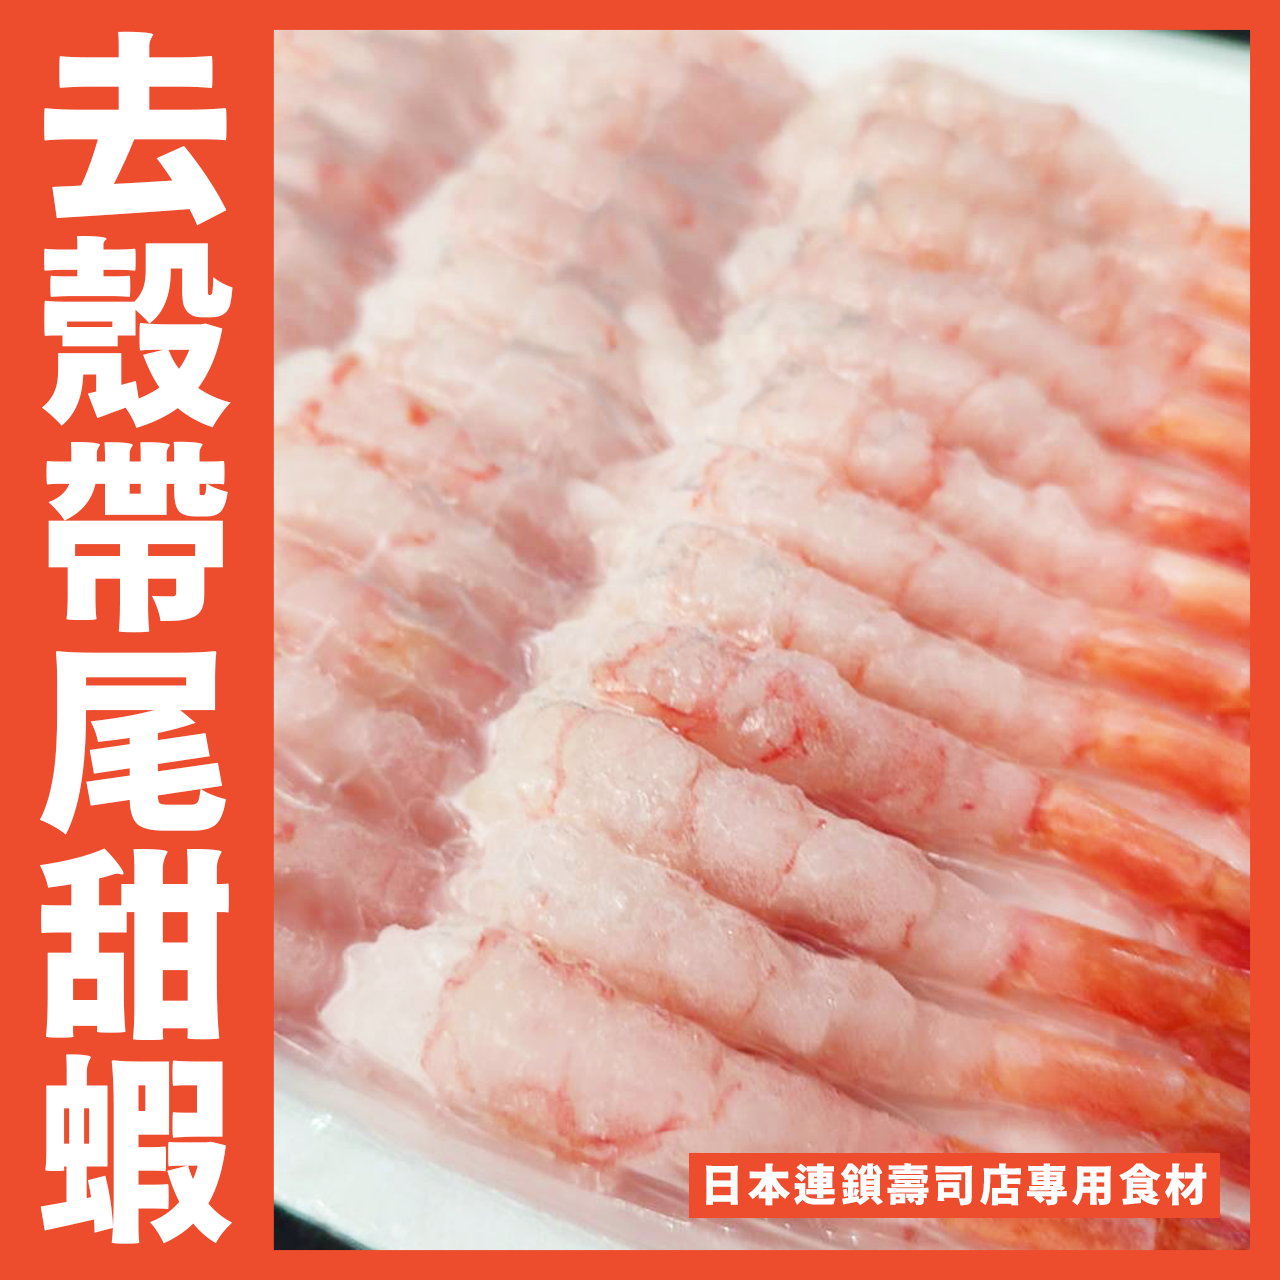 【天天來海鮮】猿村屋 生食用 去殼帶尾甜蝦 / 甜蝦